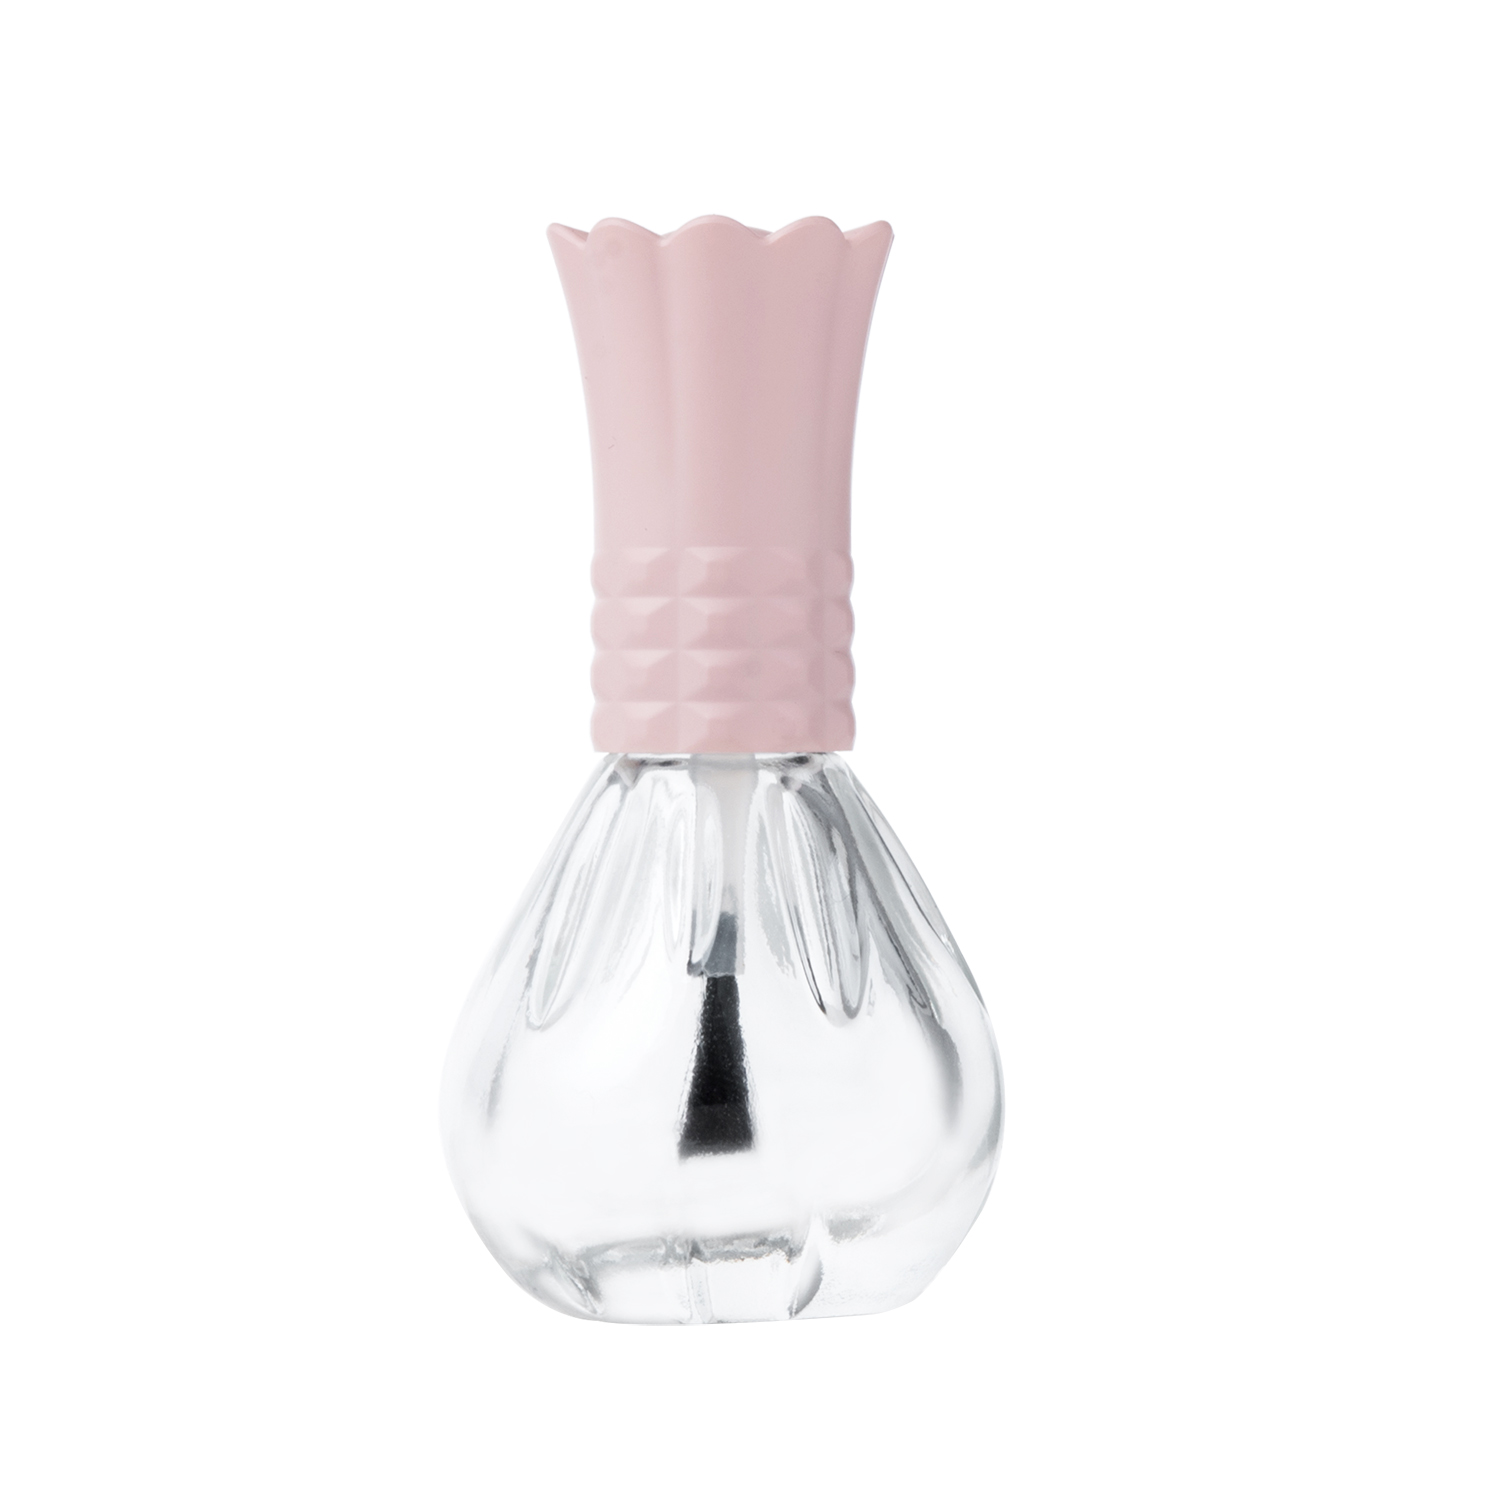 8ml Unique Nail Polish Glass Bottle with Crown Cap